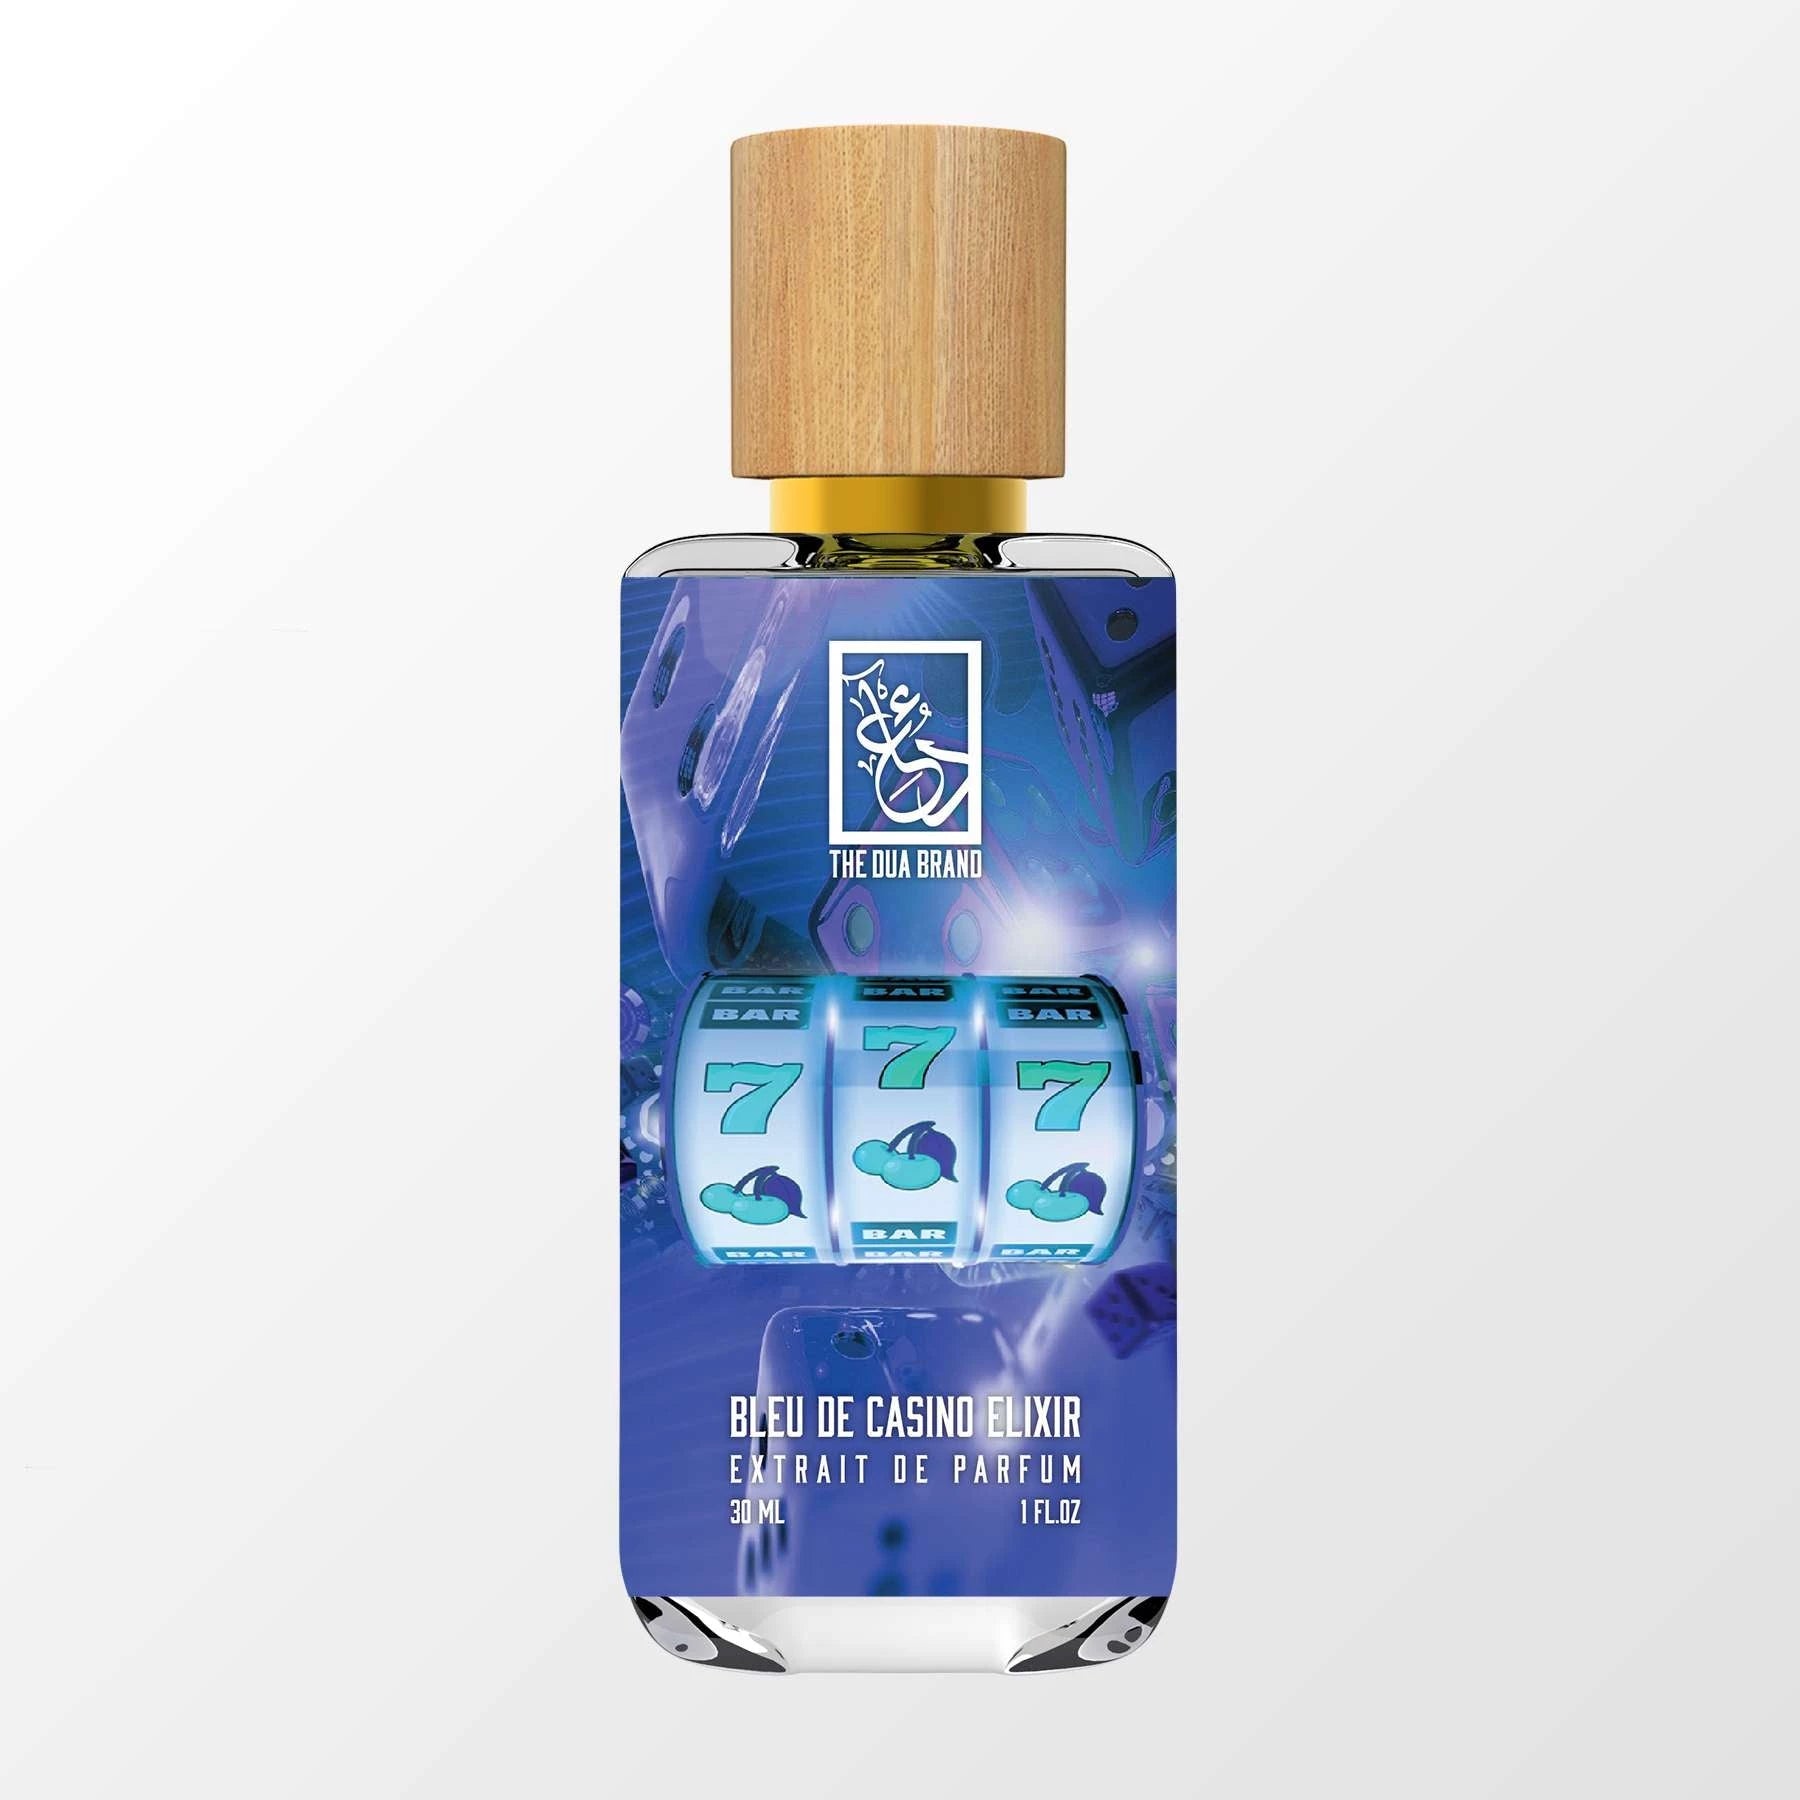 Summer Scent: Bleu de Chanel Parfum Pour Homme - christian dare edited